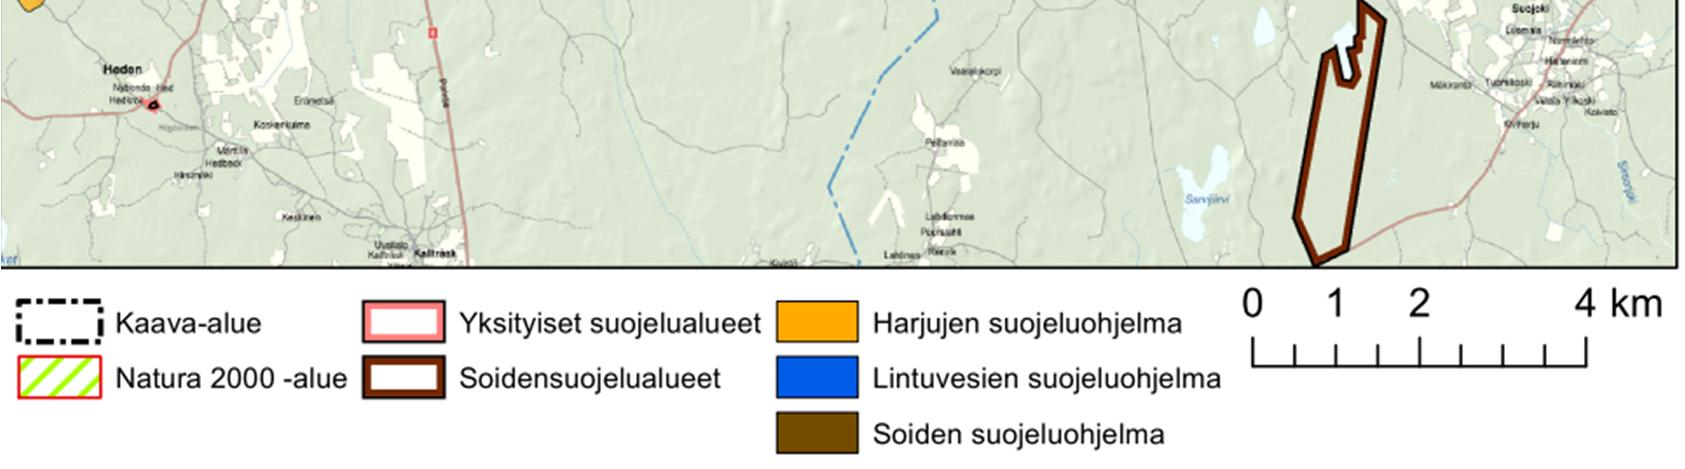 7 Tuulisuus Suomessa tuuliolosuhteiltaan parhaiten tuulivoiman tuotantoon soveltuvia alueita ovat rannikkoalueet, merialueet ja tunturit.